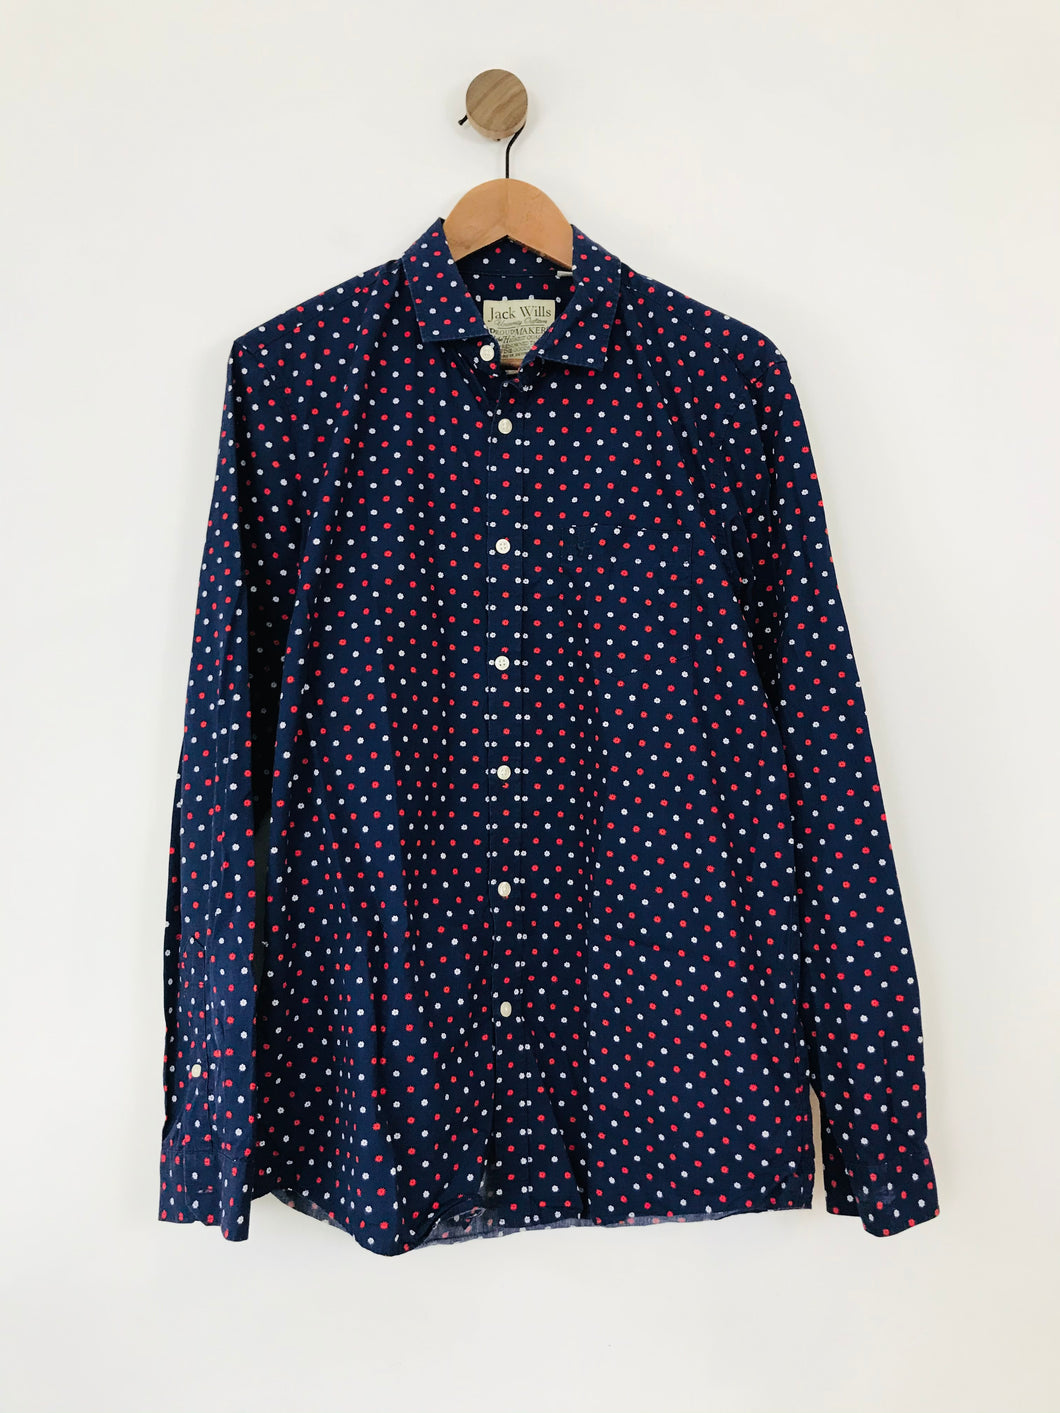 Jack Wills Men's Button Up Shirt | M | Multicolour